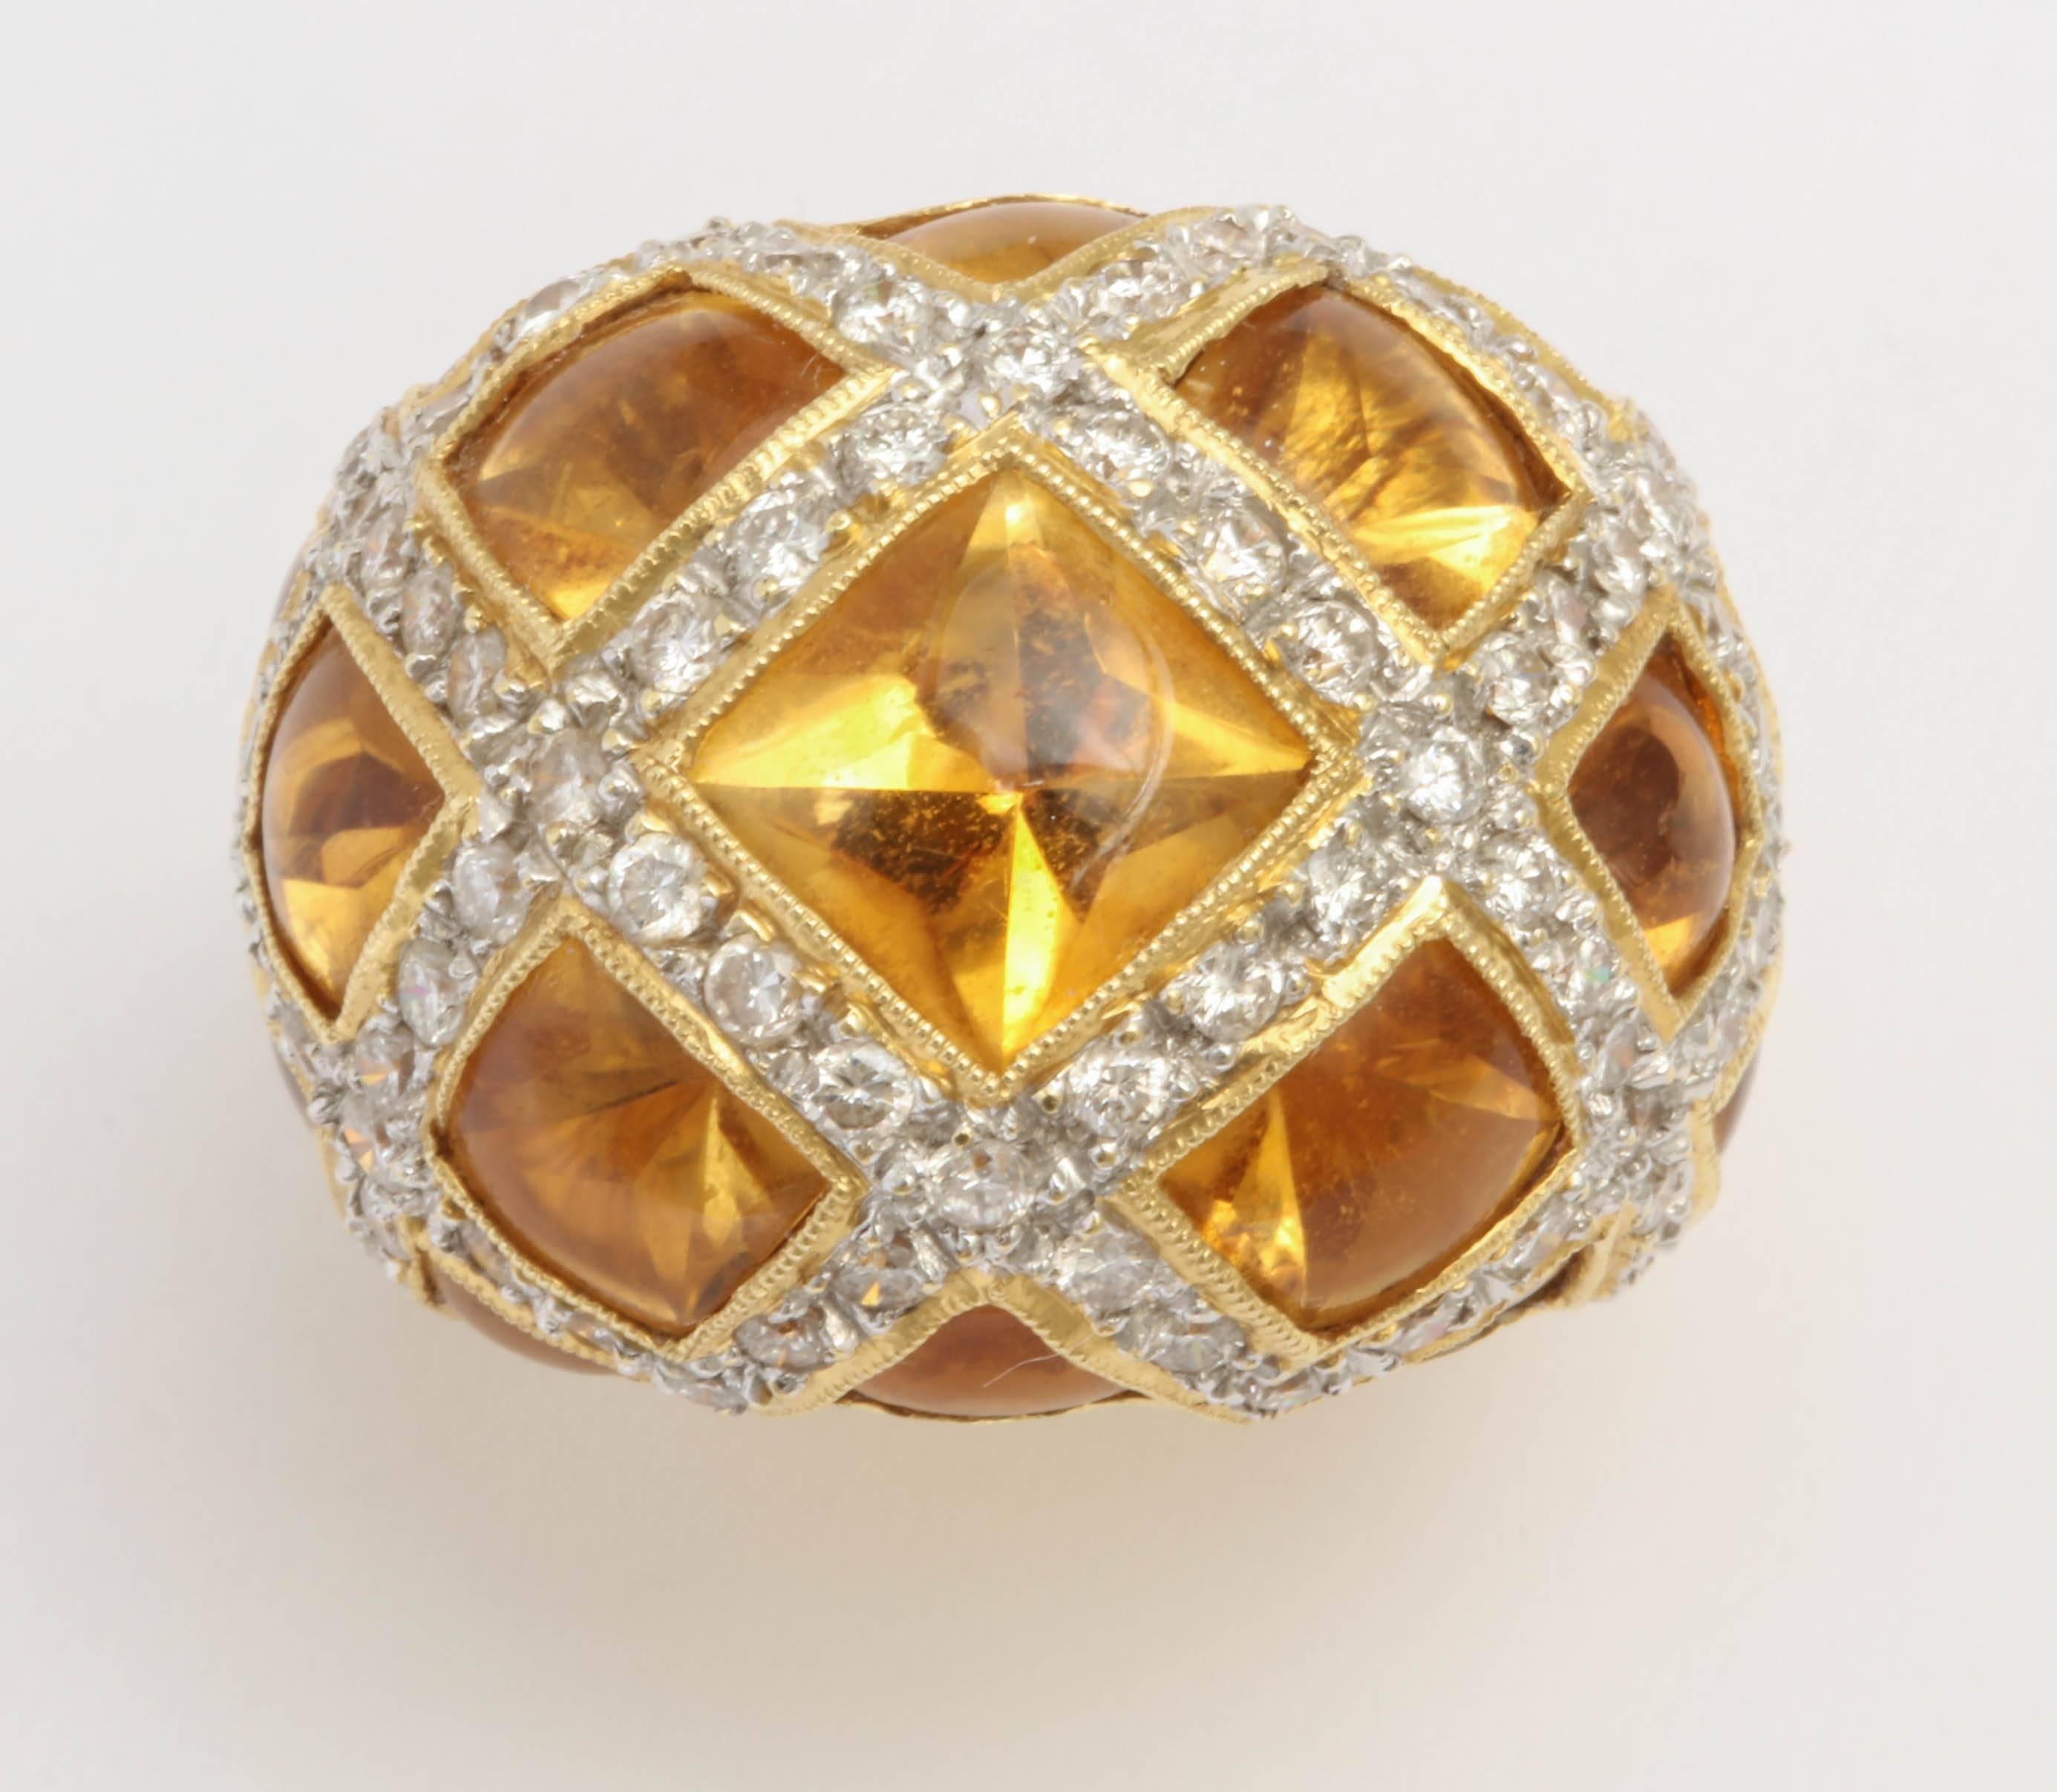 Schöner Ring mit 12 Steinen im Kreuzschliff, gekreuzt durch Diamantbänder mit vollem Schliff und sauberem Schliff.  Kuppelstil - sehr beeindruckend.  Kann an jedem Finger getragen werden.